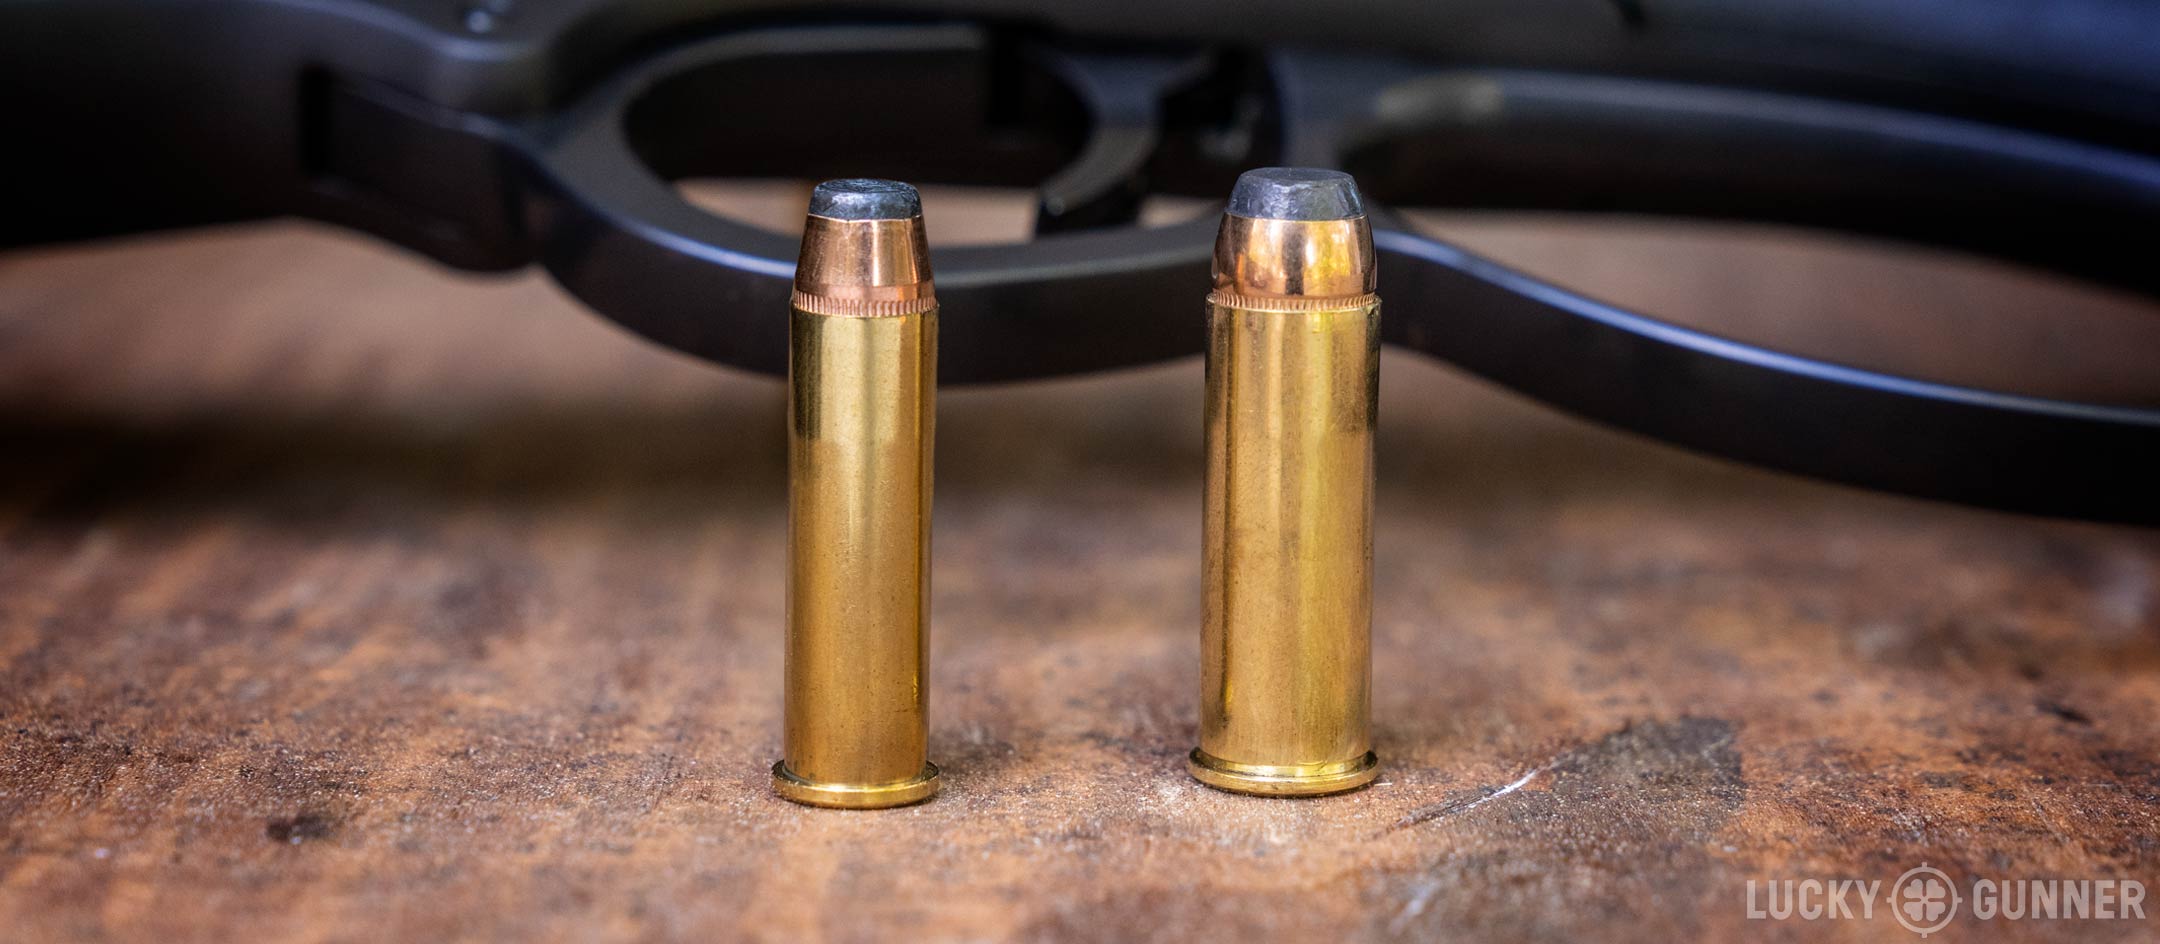 357 vs 44 Magnum: Caliber Comparison